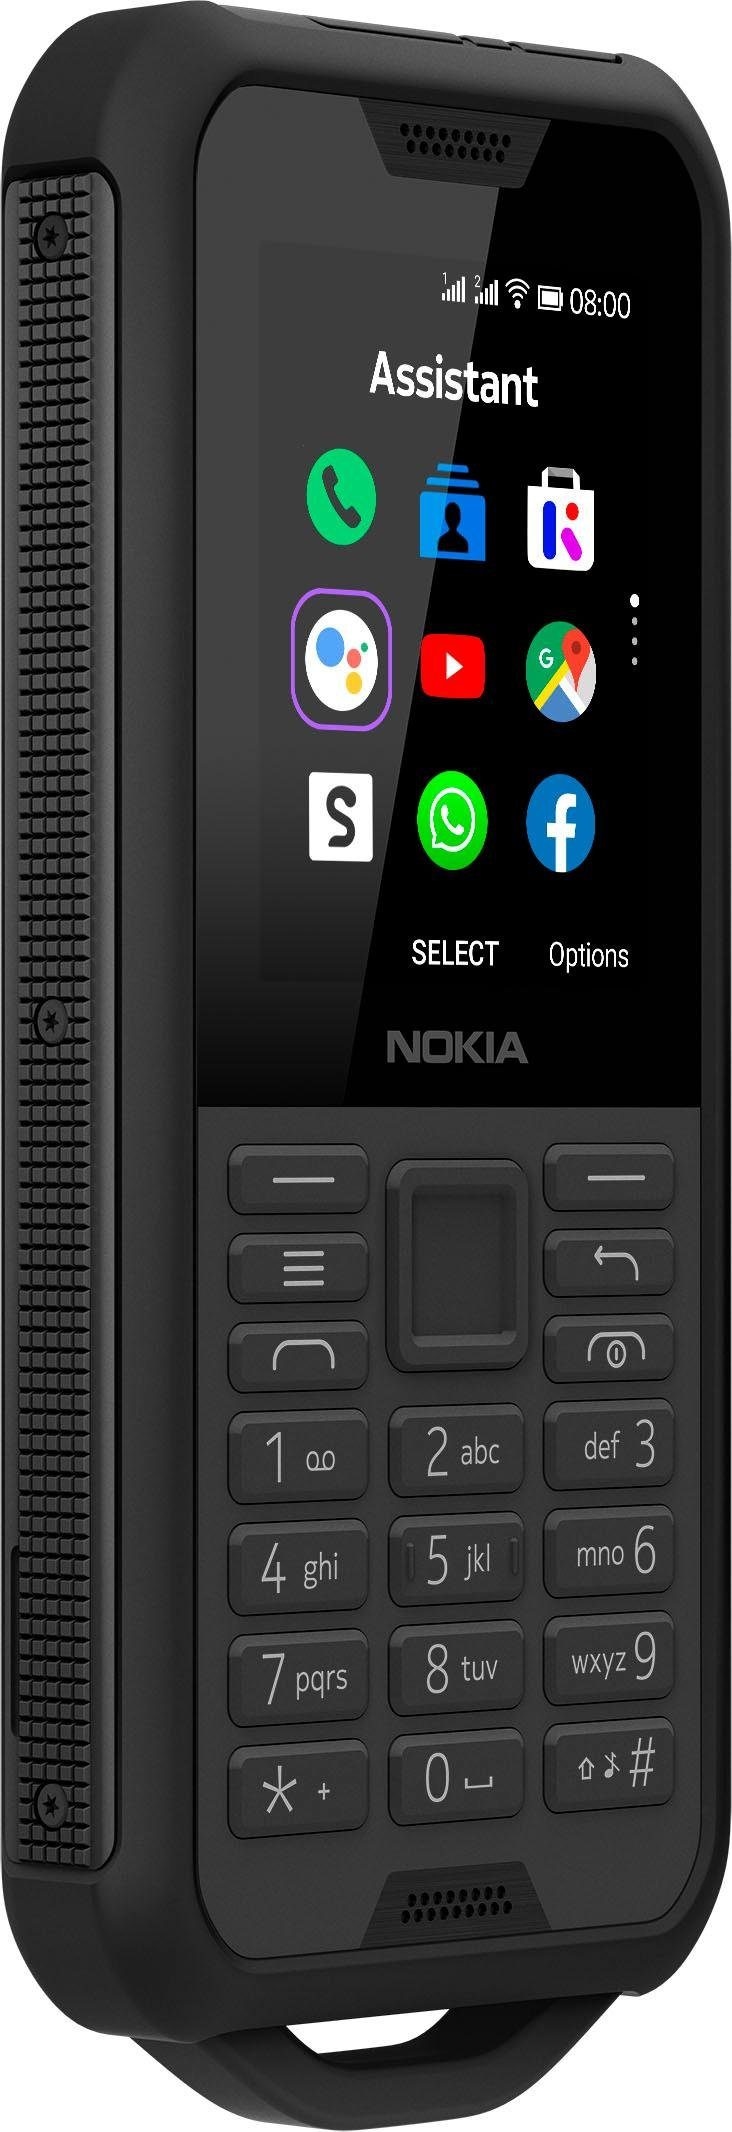 GB MP »800 6,1 2 Kamera cm/2,4 Schwarzer Tough«, Speicherplatz, im 4 Stahl, %Sale jetzt Nokia Zoll, Handy